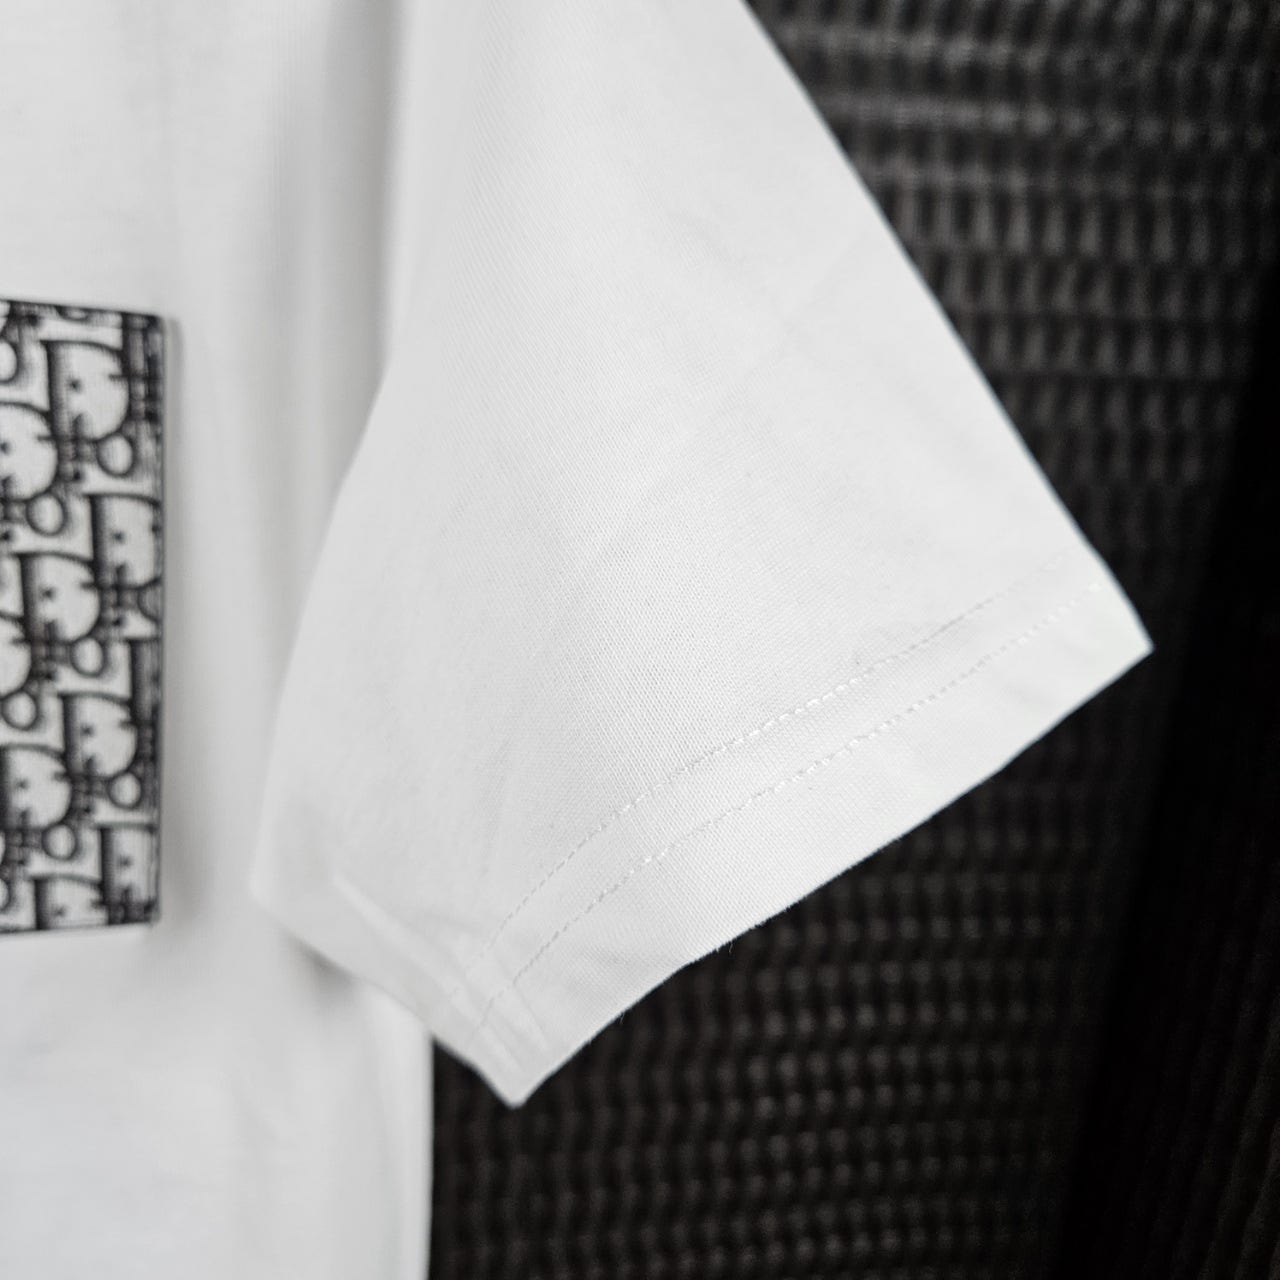 디올-가죽오블리크-티셔츠-1-명품 레플리카 미러 SA급